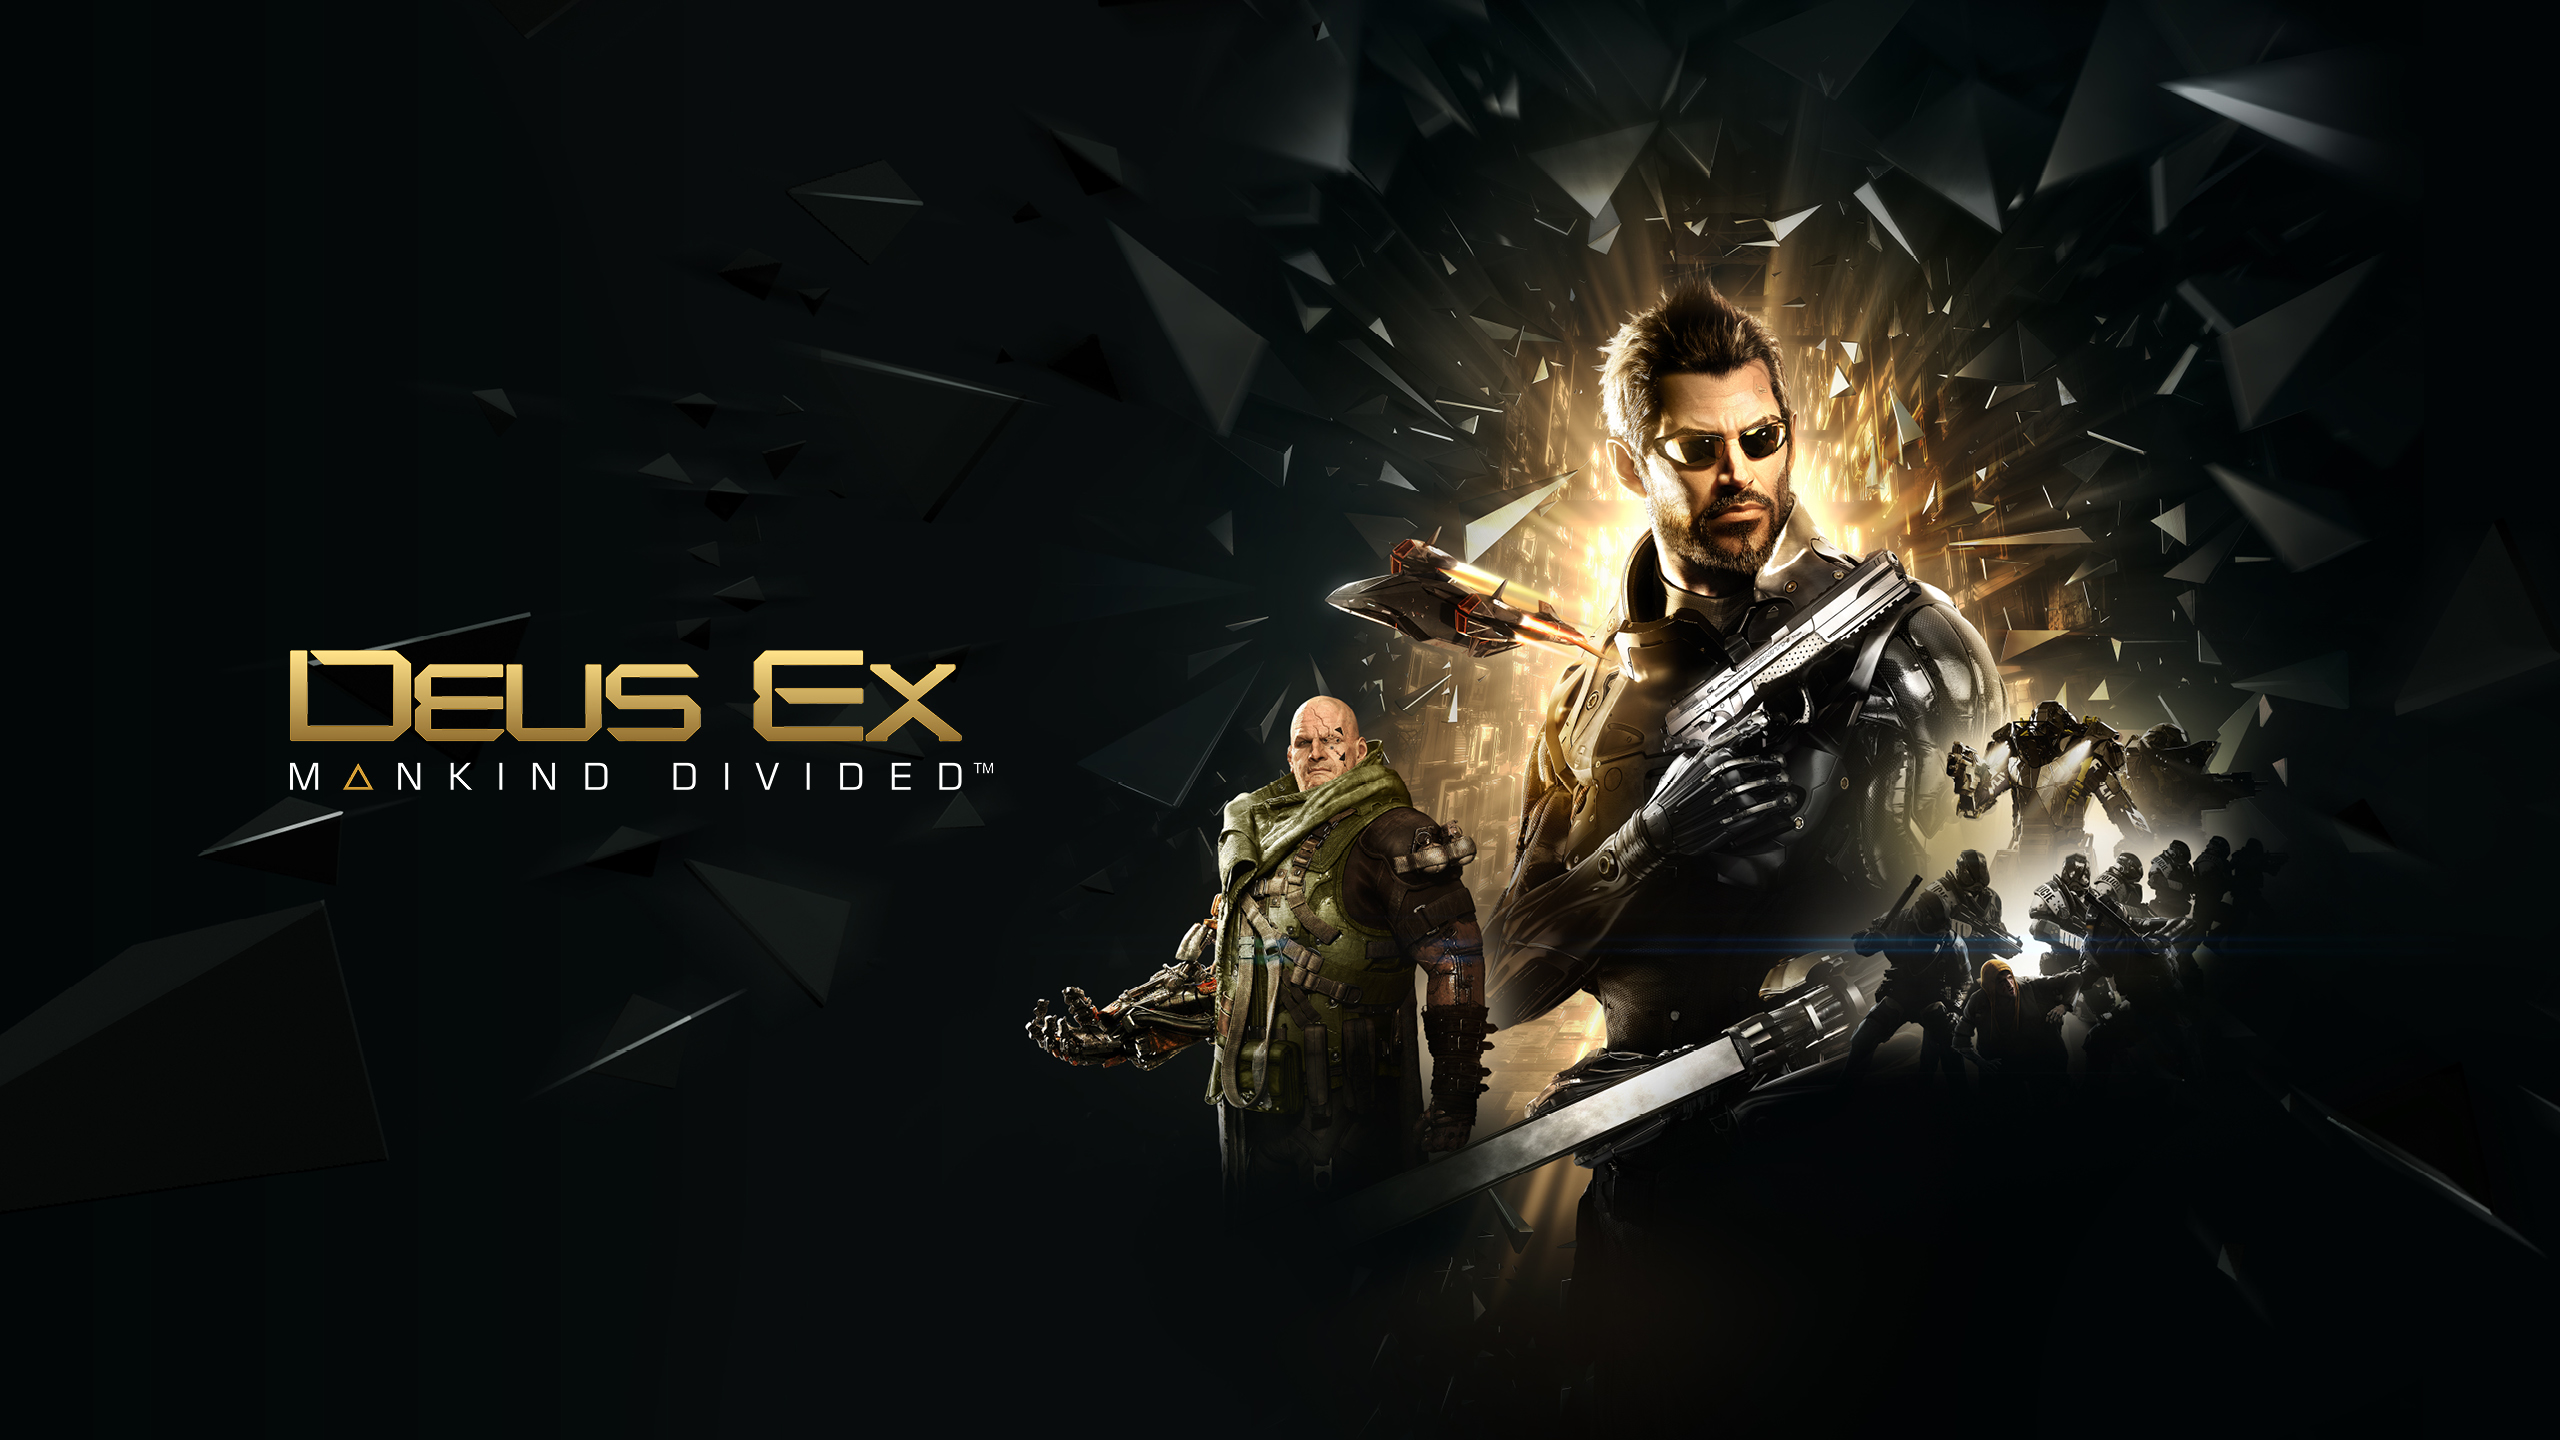 Deus Ex HD Wallpaper 4 X 1440